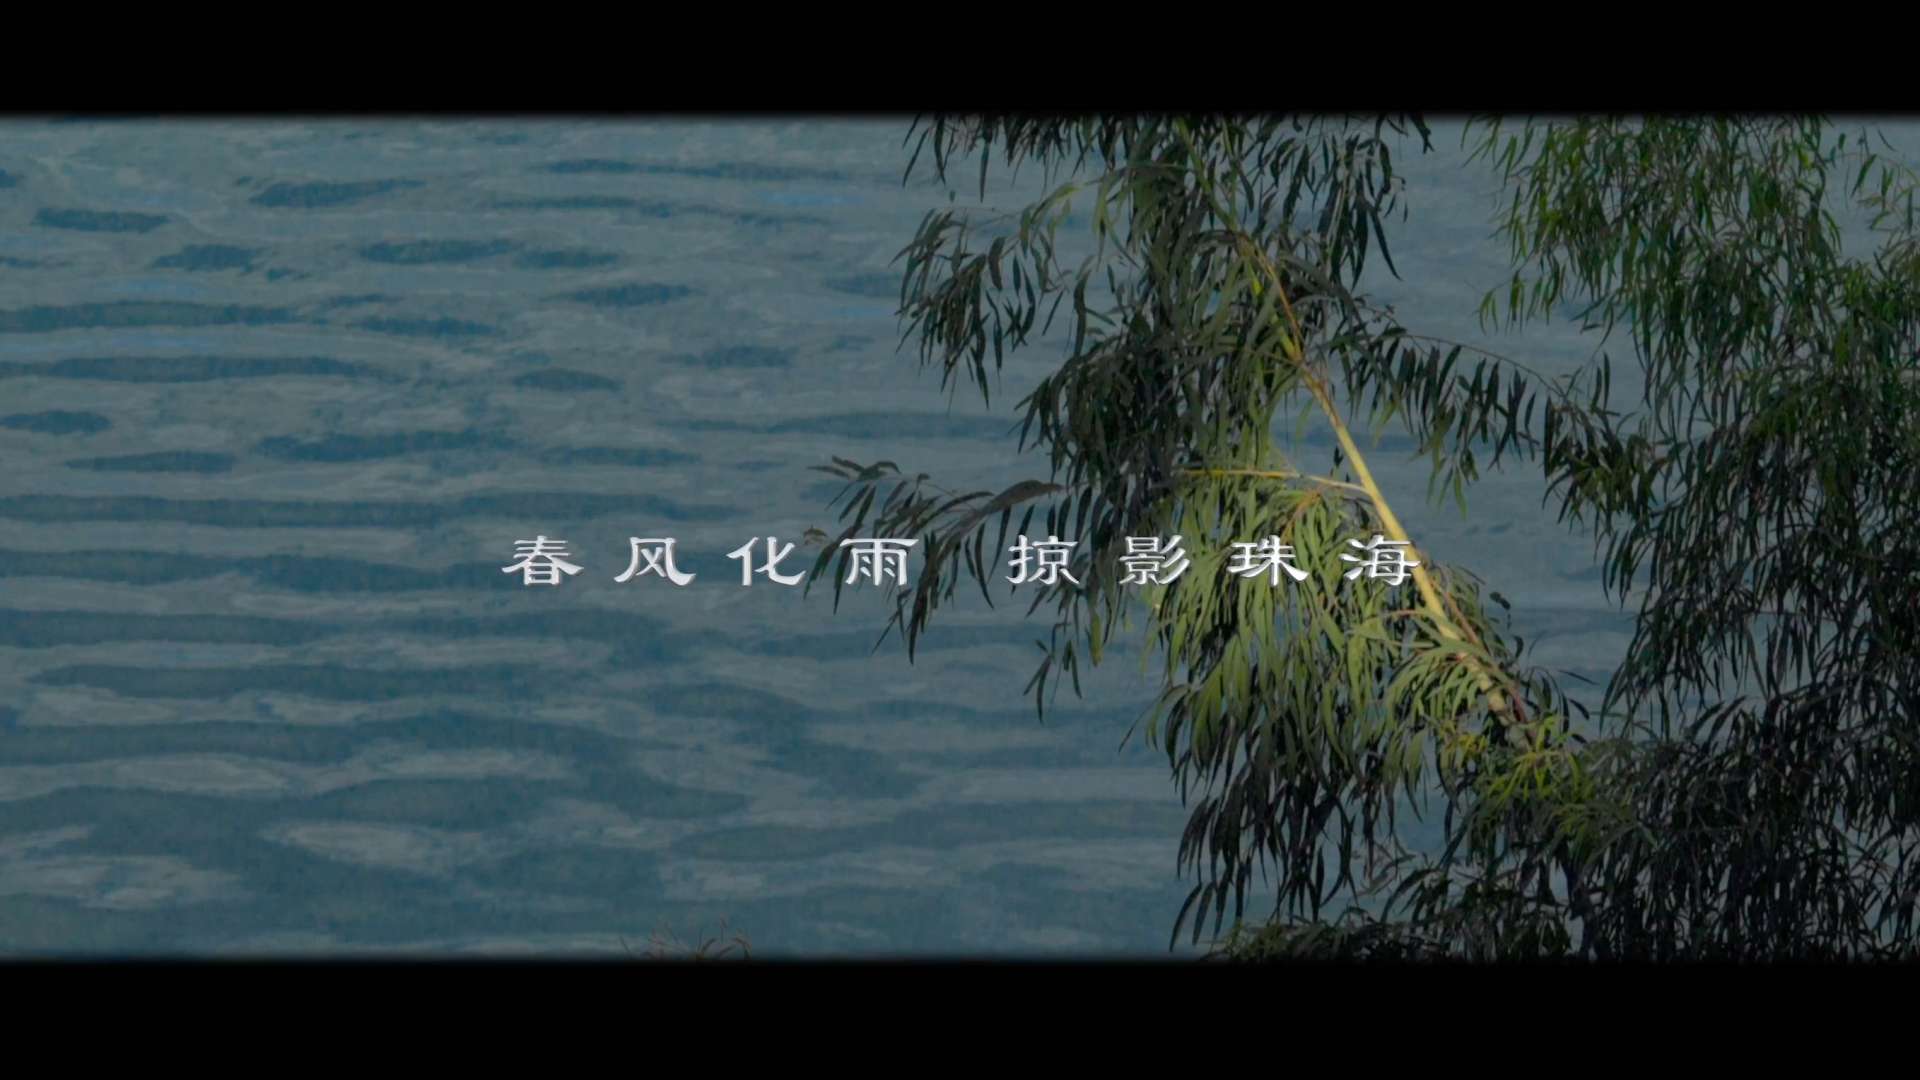 《绿色珠海》珠海生态文明城市形象宣传片